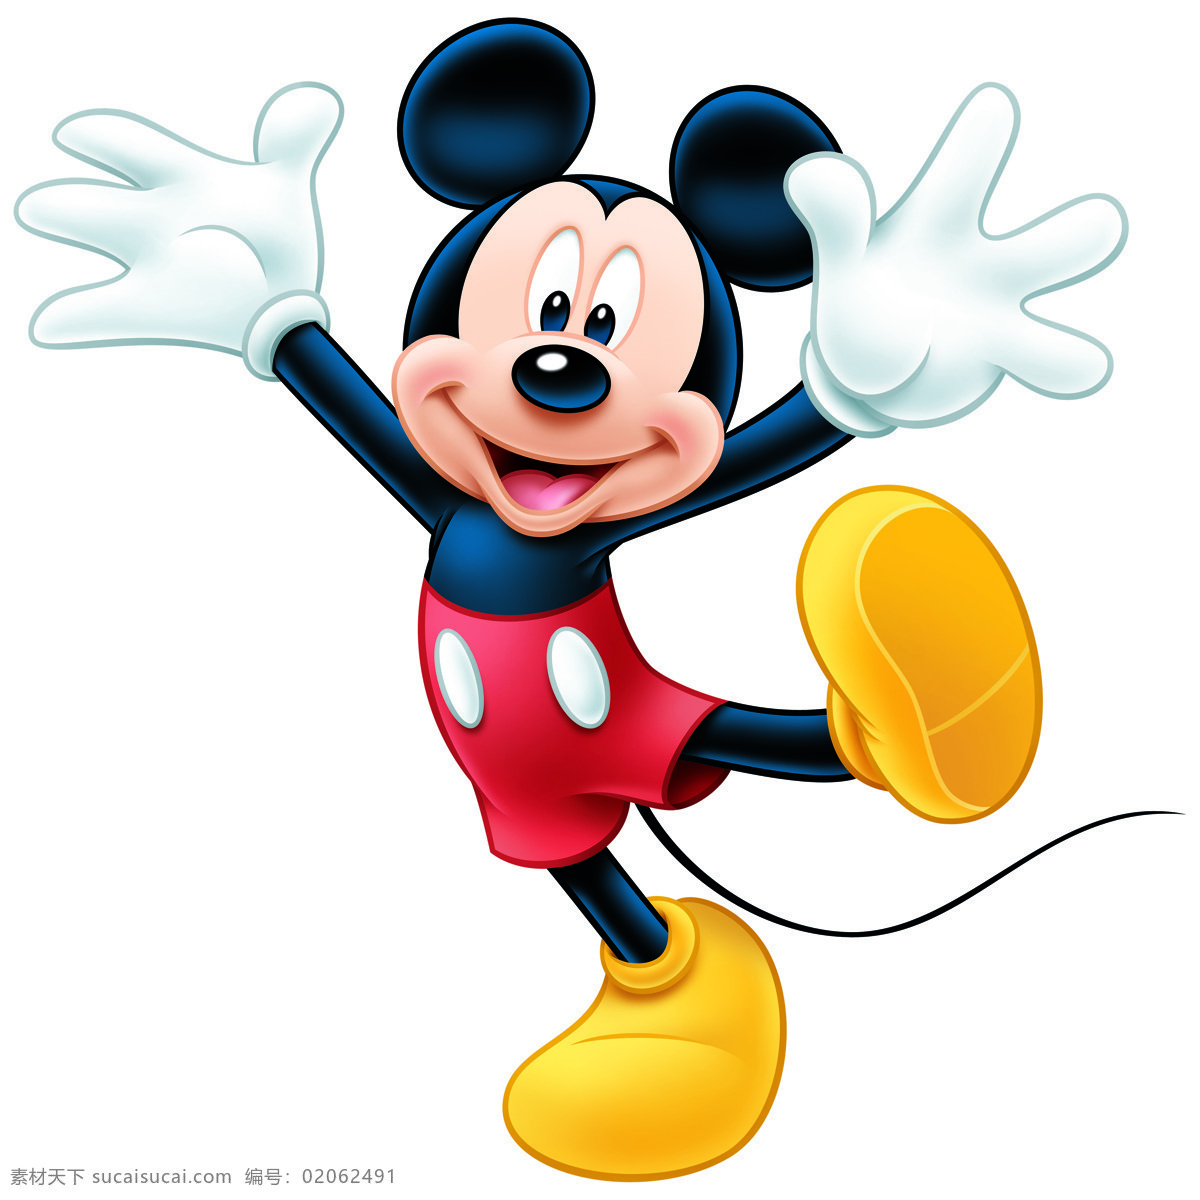 可爱的米老鼠 米老鼠 卡通 可爱 迪士尼 卡通动物 米奇 米妮 头像 动漫 乐园 壁画 装饰画 插画 老鼠 红衣服 黑色 黄色 动漫动画 动漫人物